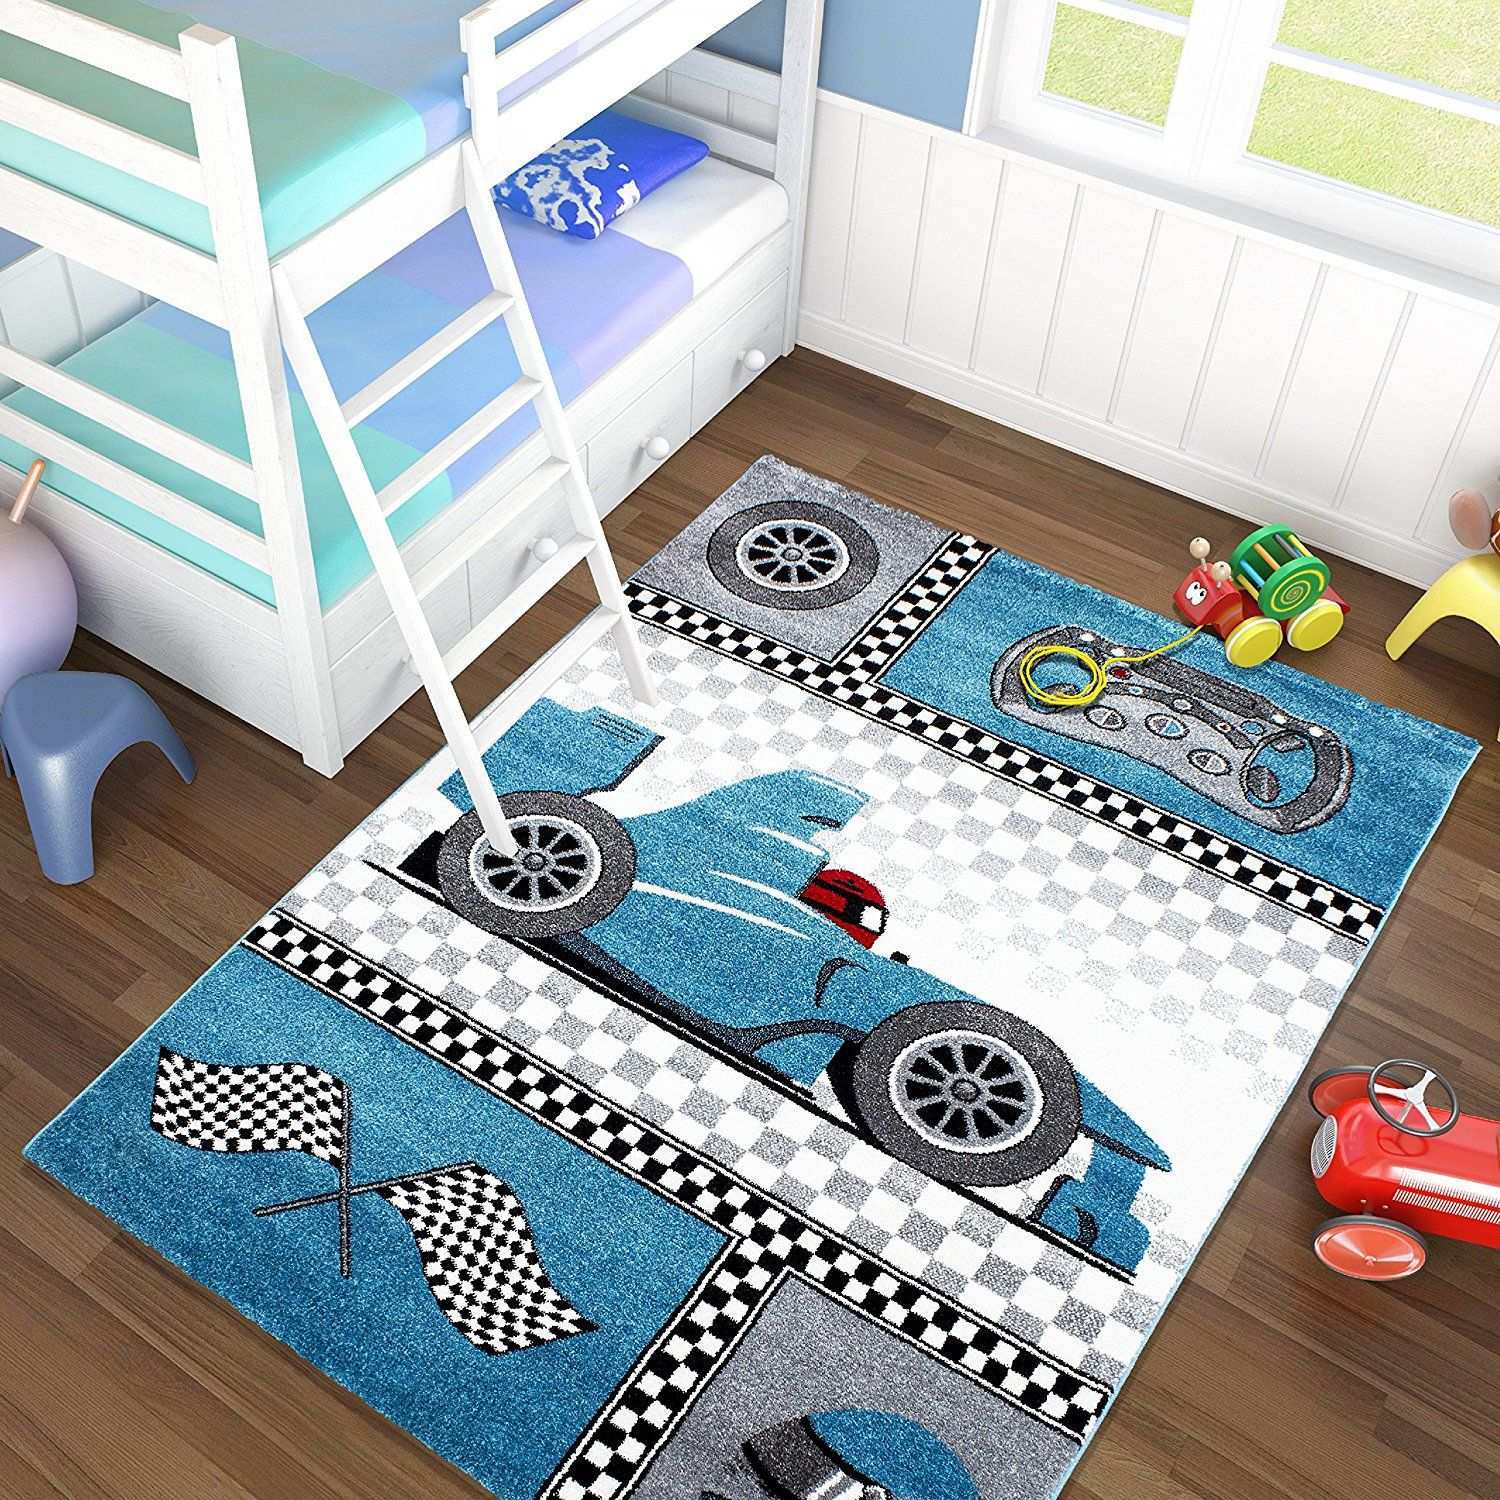 Autozimmer Auto Kinderzimmer Teppich Blau Grau Mit Rennwagen Kinder Zimmer Teppich Kinderzimmer Turschild Kinderzimmer